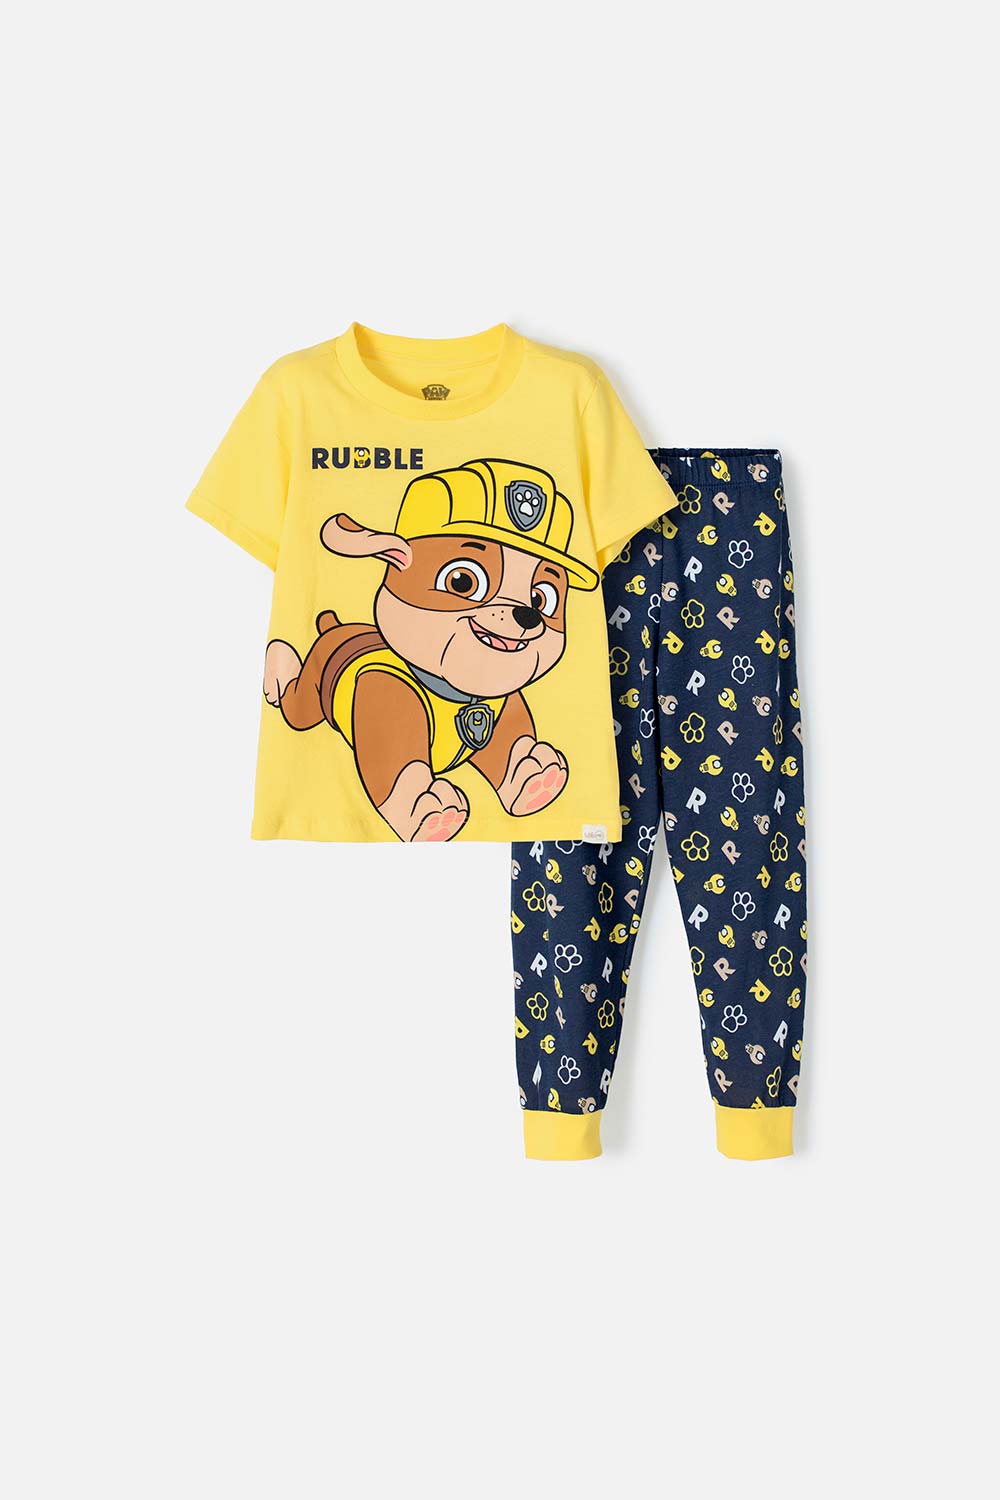 Pijama de Paw Patrol para niño, manga larga y pantalón largo de LittleMIC.  - Ropa infantil para niños y niñas de 4 a 15 años | Tienda Online MIC